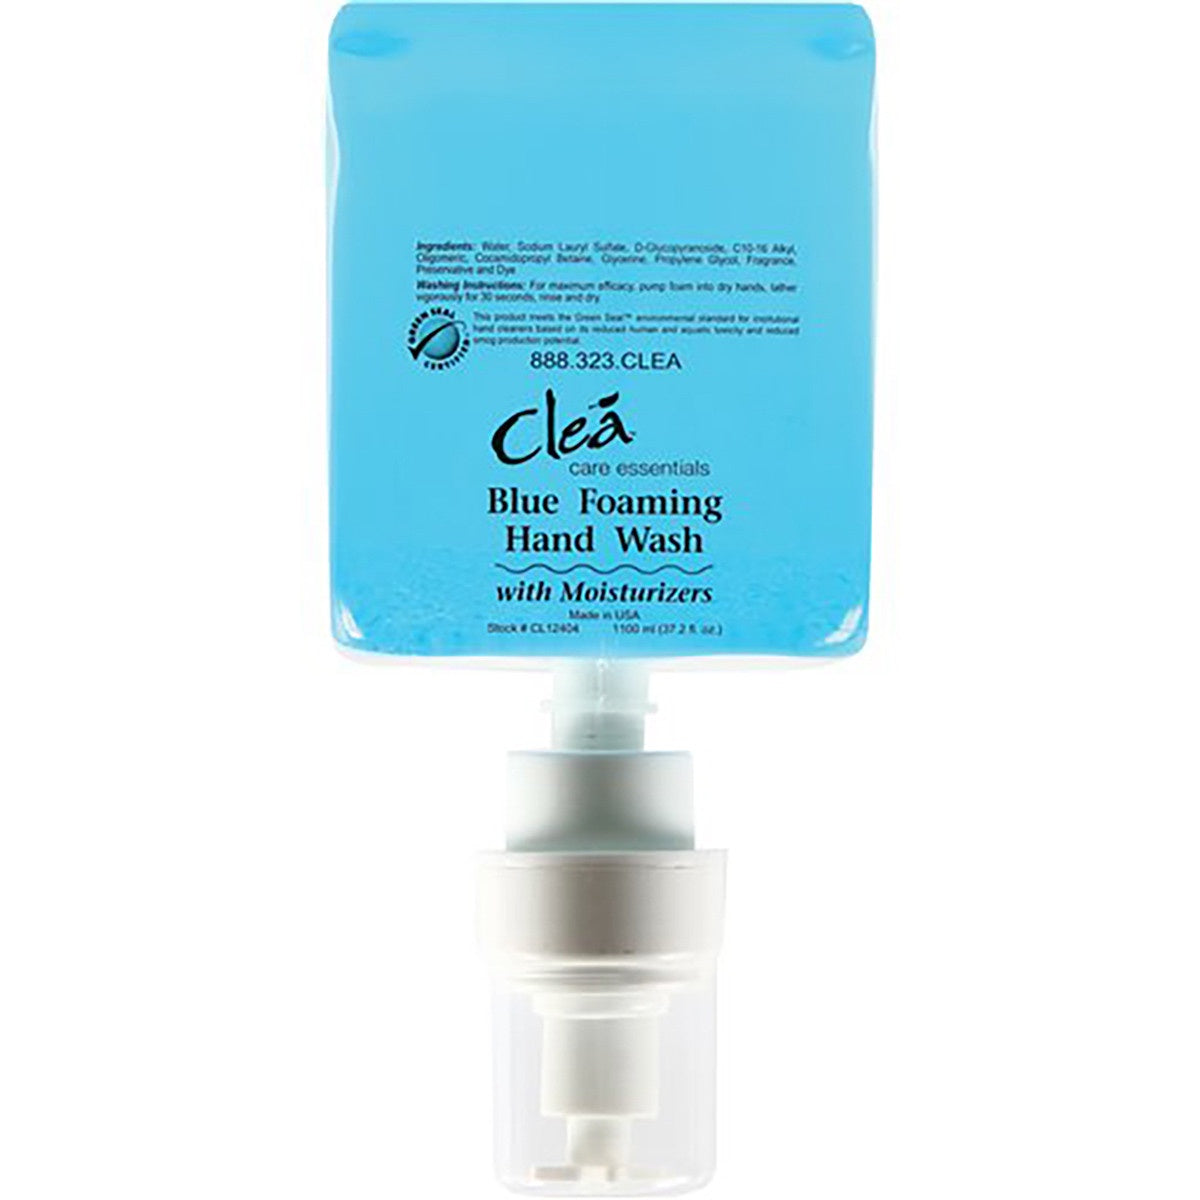 Clea Versa-Foam Green Seal Certified Moist. Foam Soap, 4x1100ml Refills/case